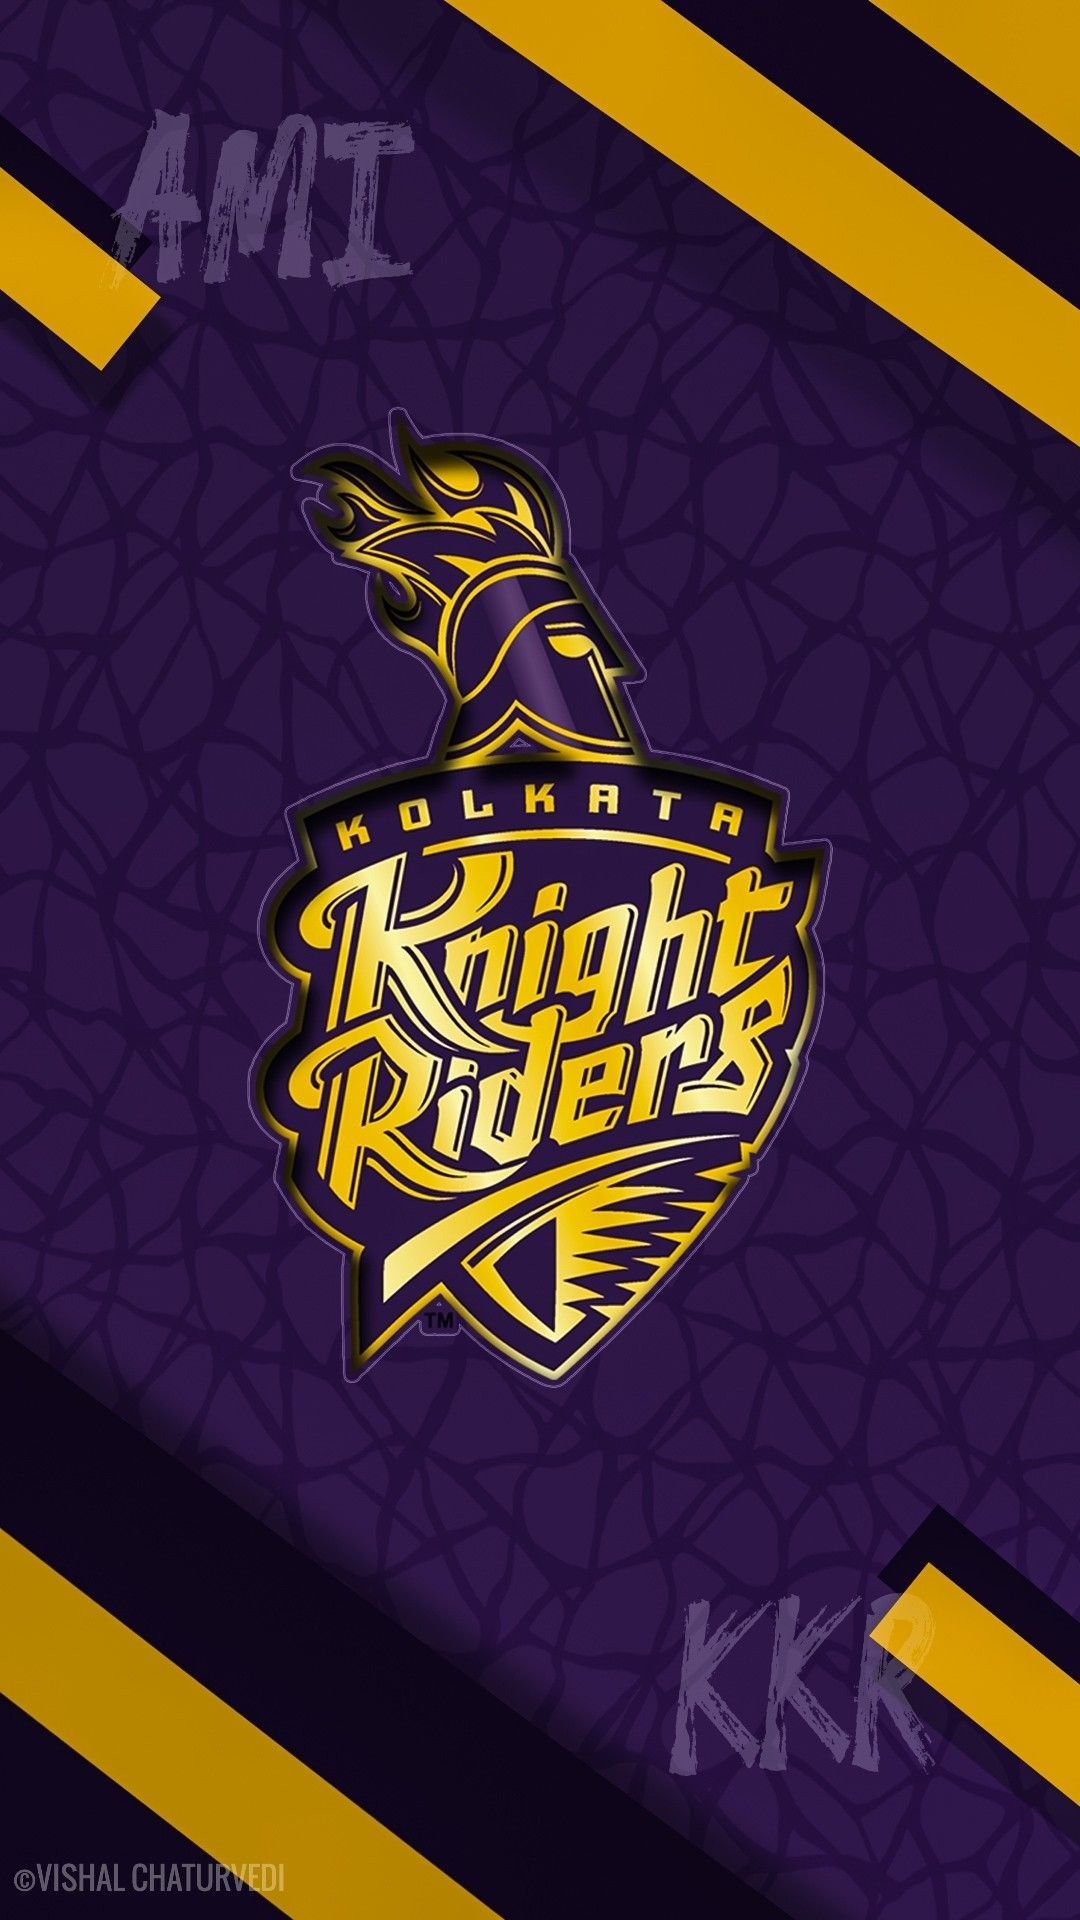 Kolkata Knight Riders Logo PNG Image | Kolkata knight riders, Knight rider,  Cricket logo